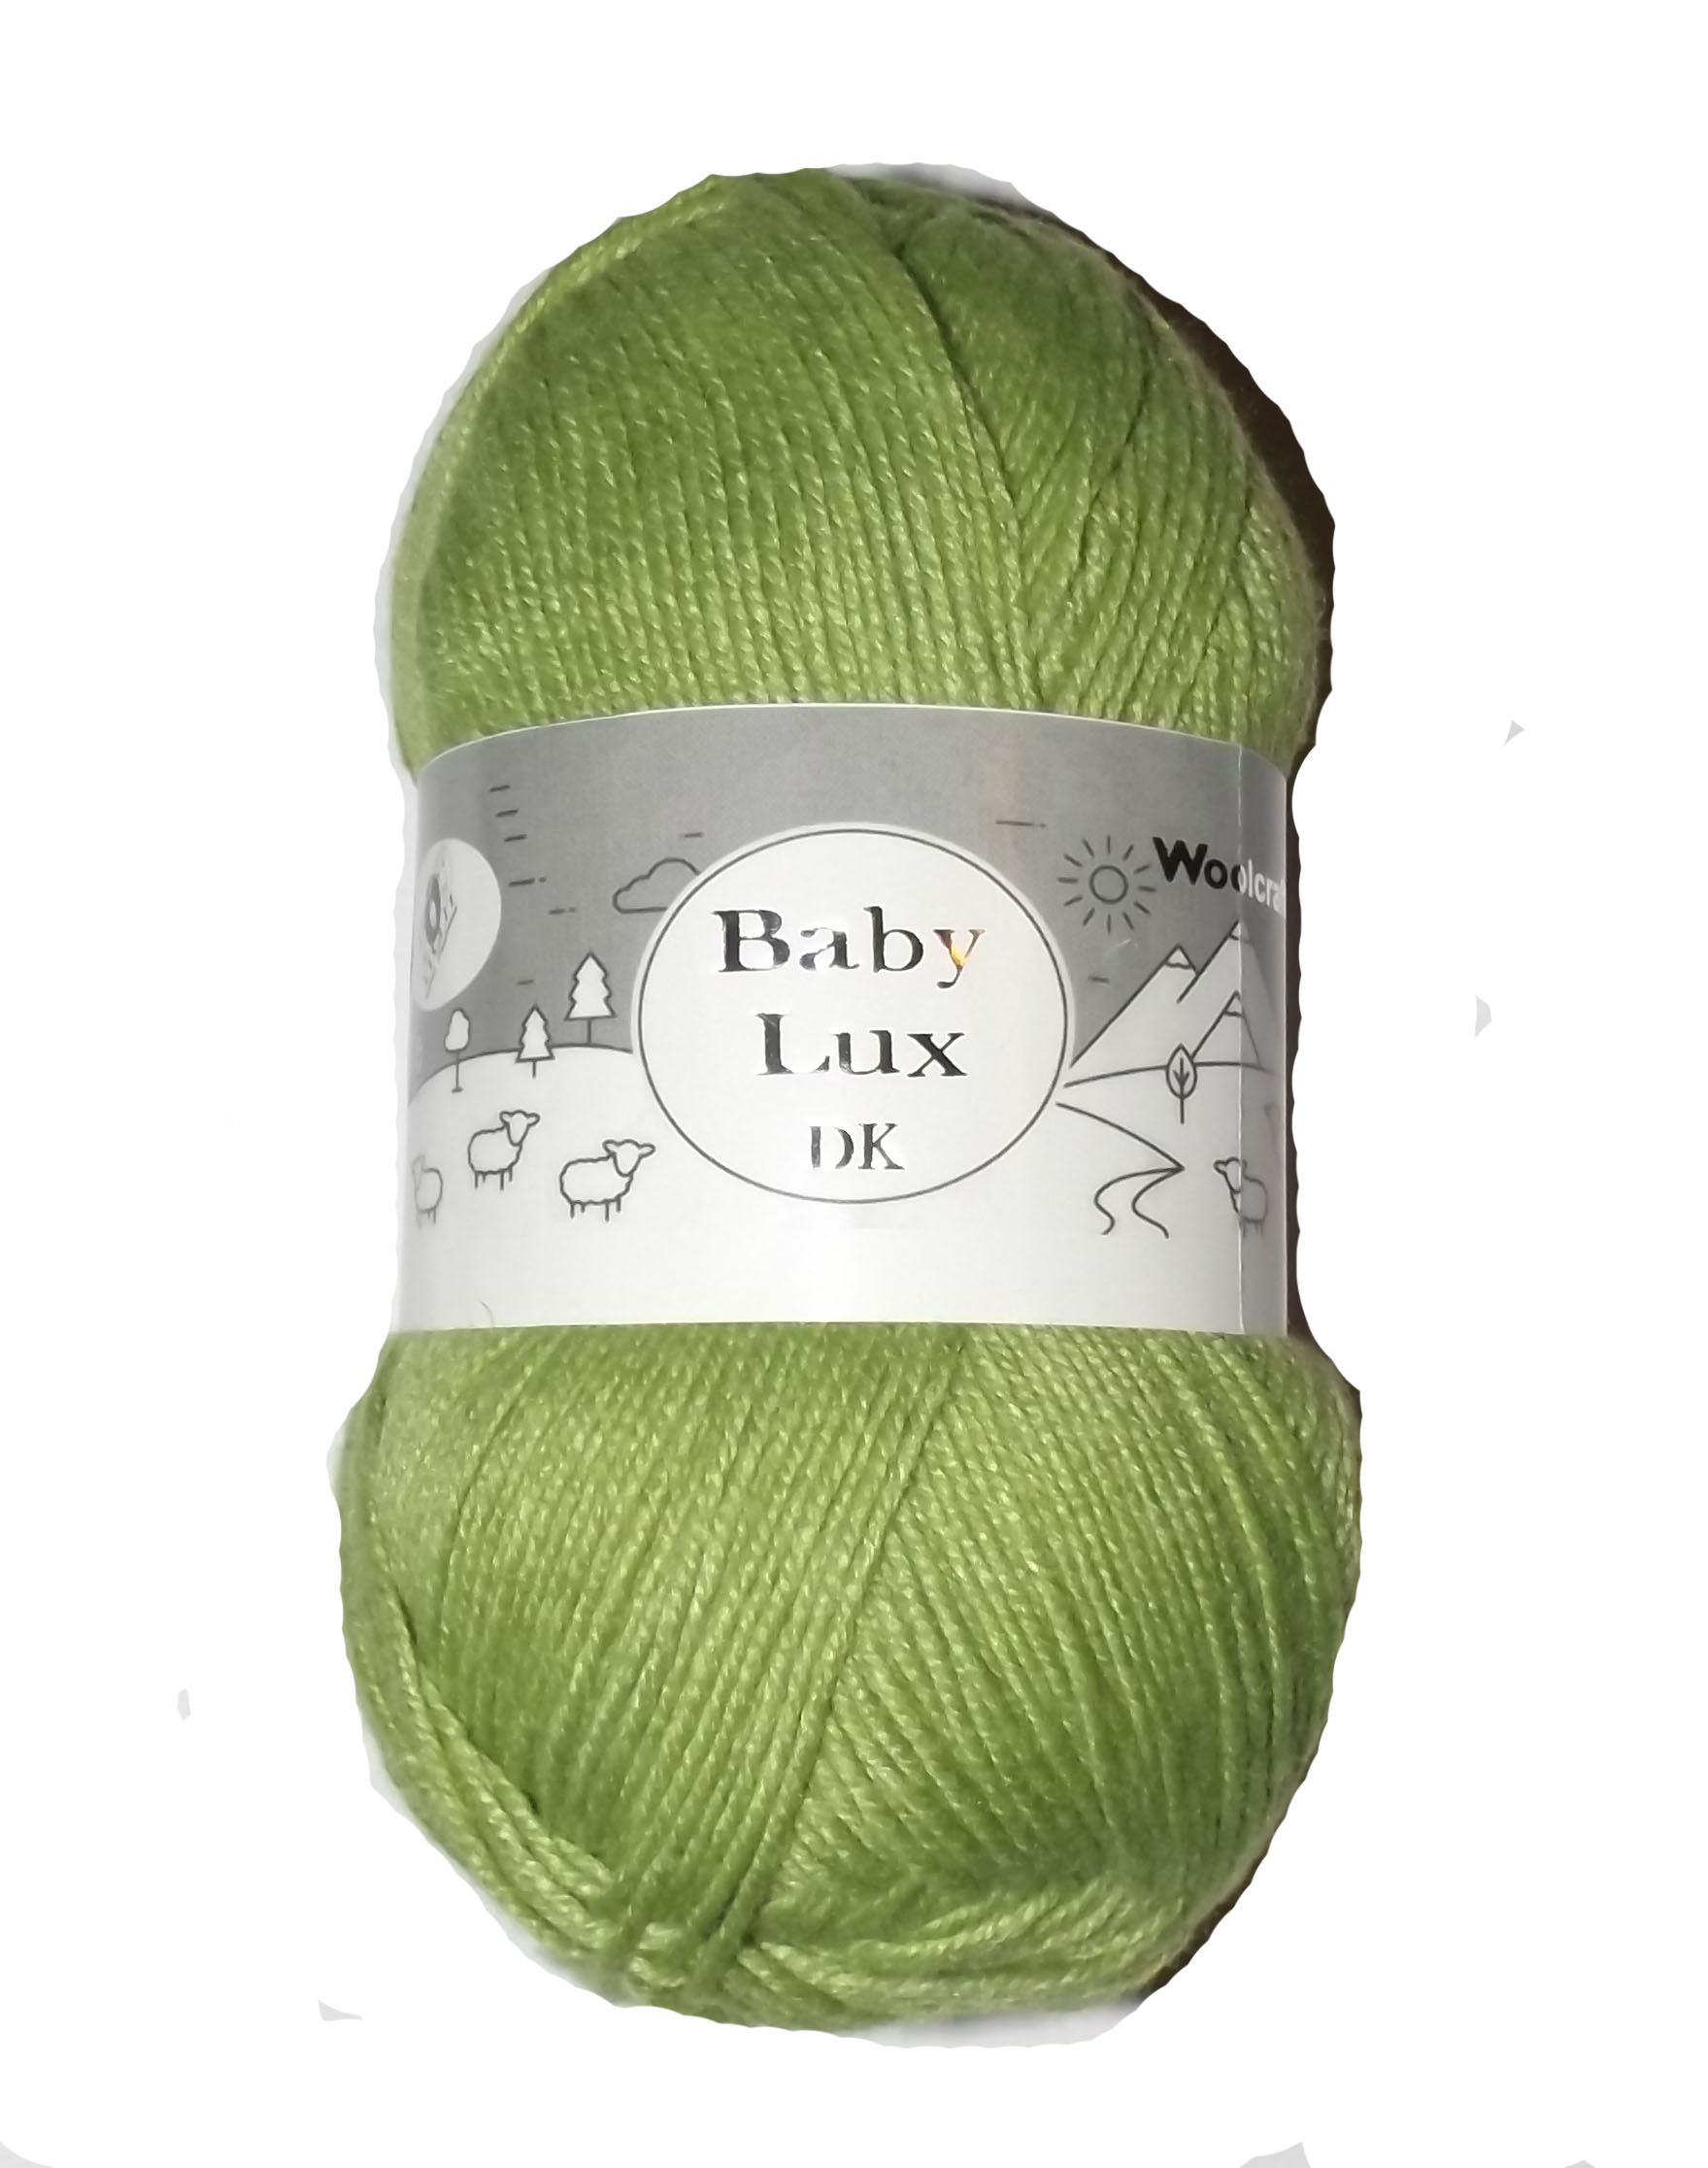 Baby Lux DK Yarn